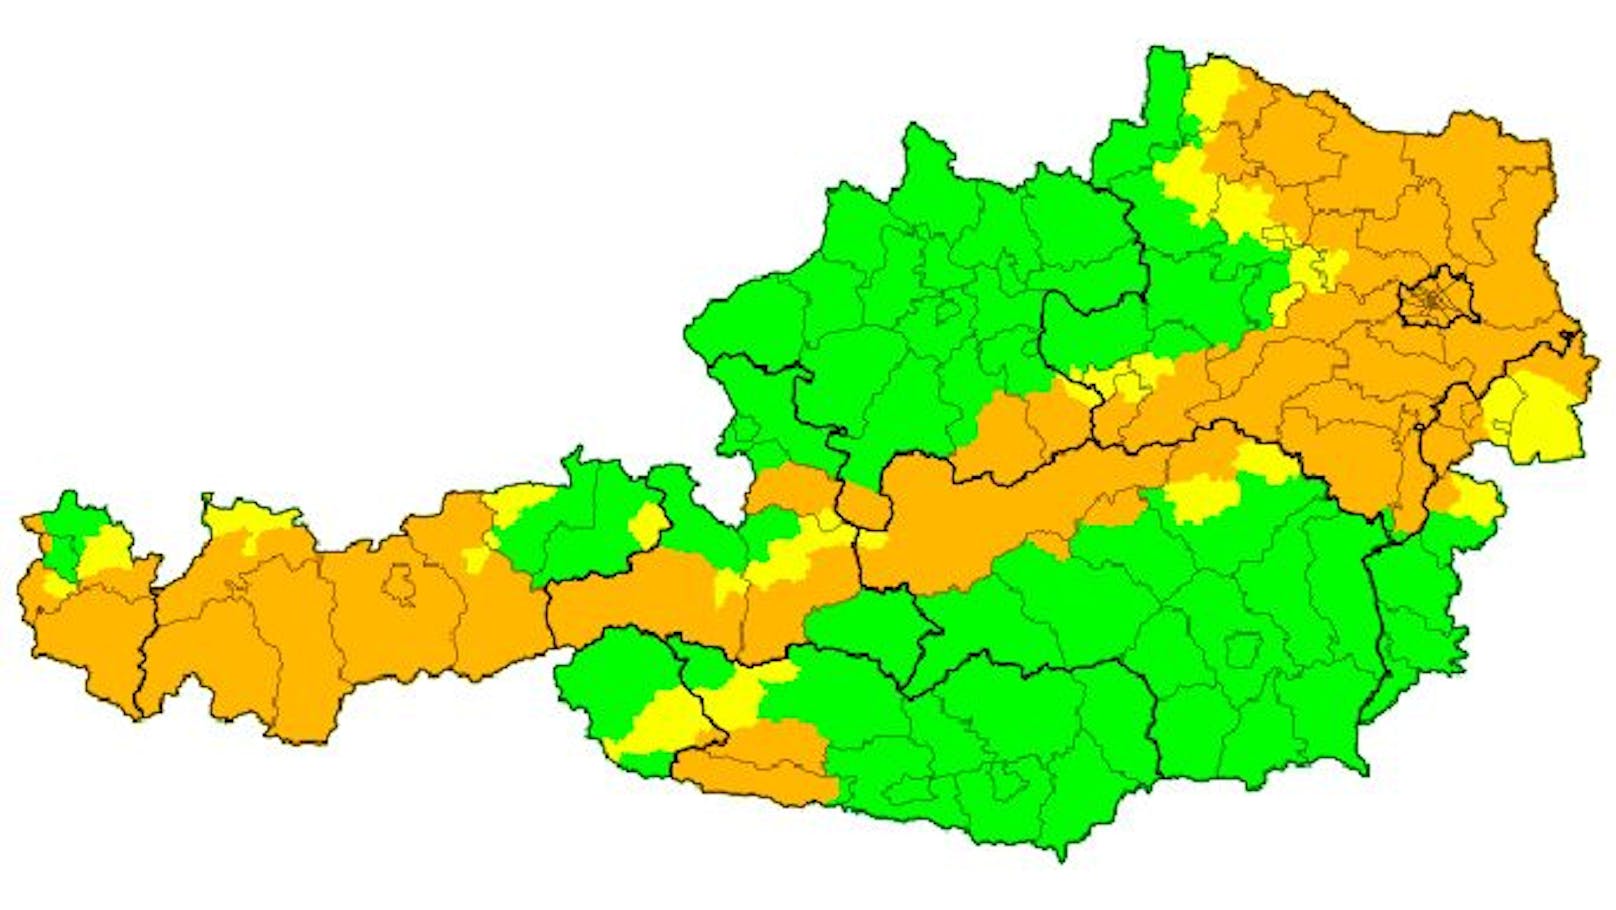 Aktuelle Unwetterwarnungen (Sturm) in Österreich: Sie gelten ab Dienstagmorgen bis Mittwochabend.